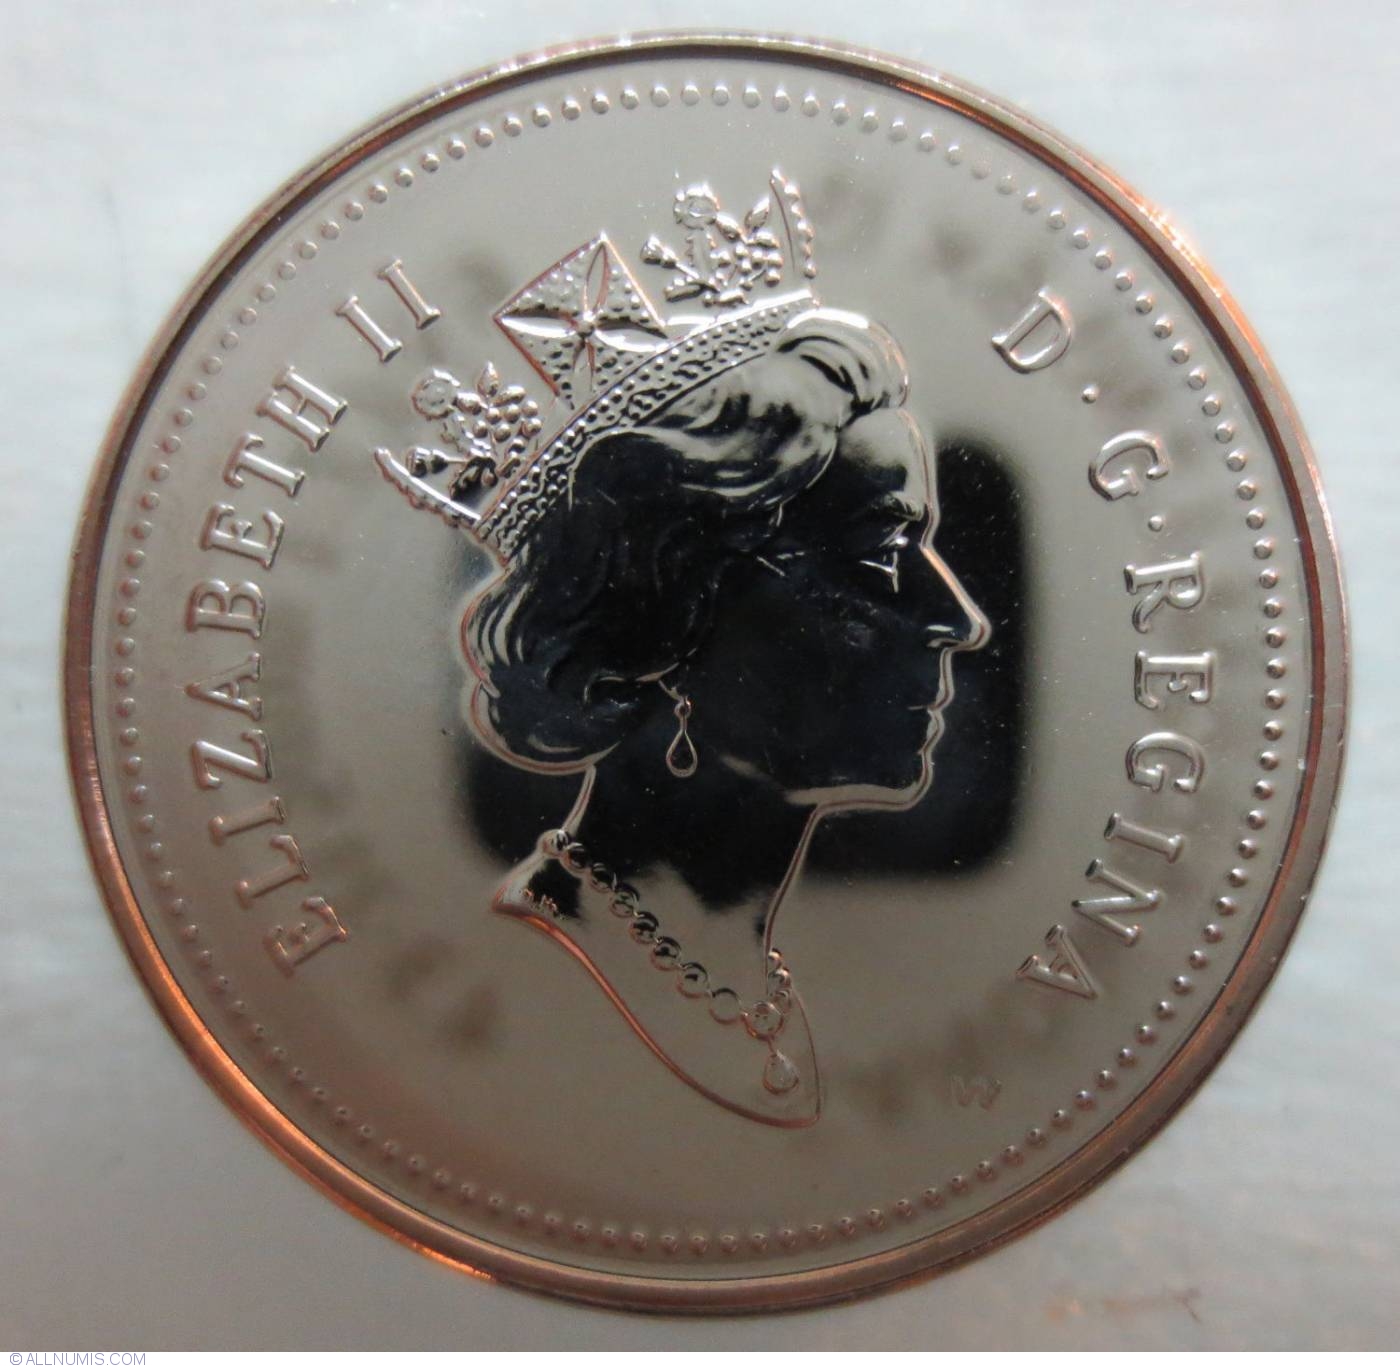 5 Cents 2000 W, Elizabeth II (1953-2022) - Canada - Coin - 34014